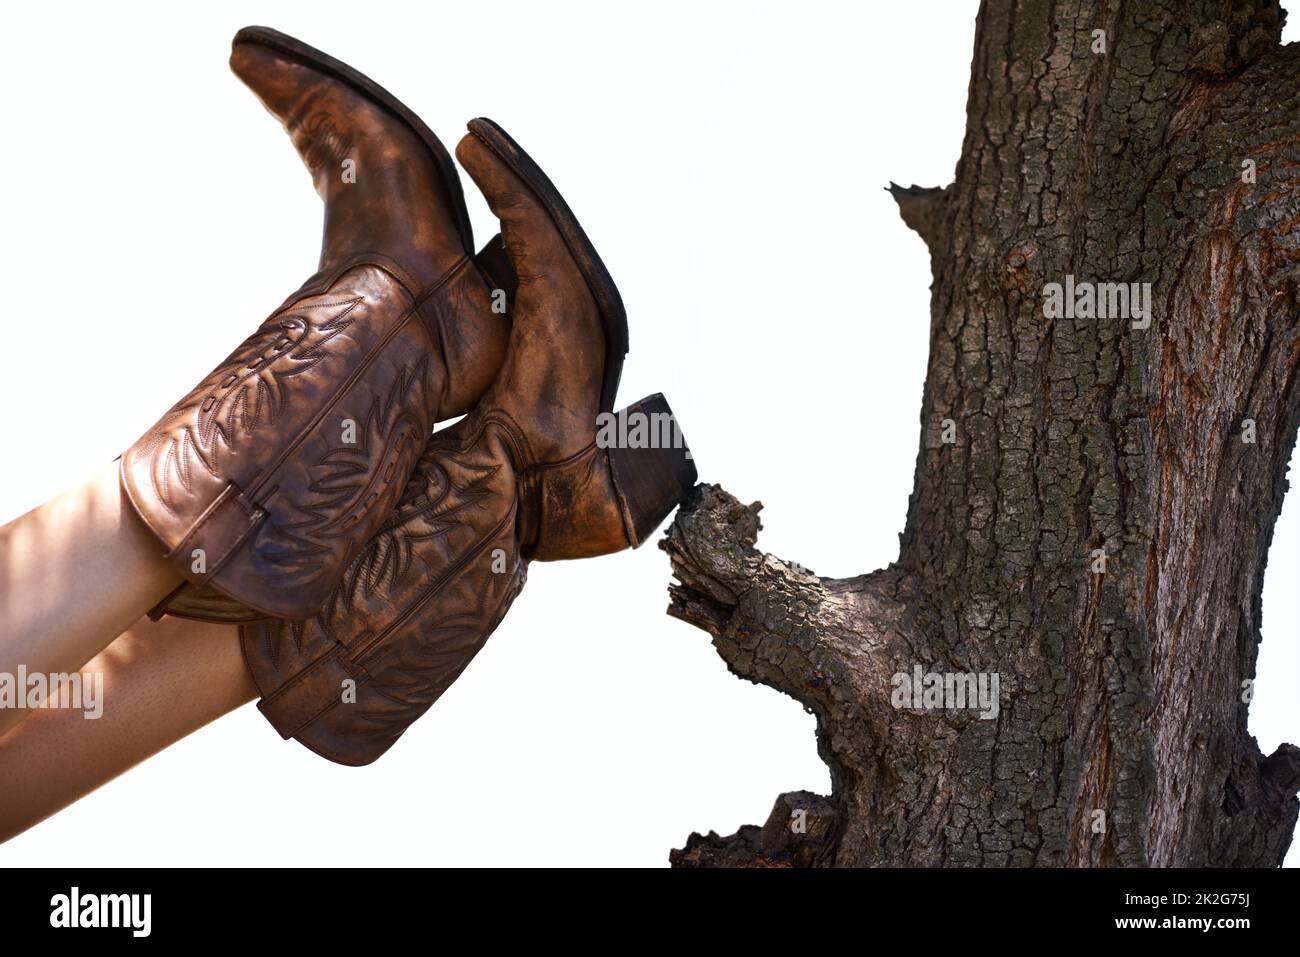 Lässiger Cowboy. Ein kurzer Schuss einer Person, die Cowboystiefel trägt und ihre Füße an einen Baum lehnt. Stockfoto